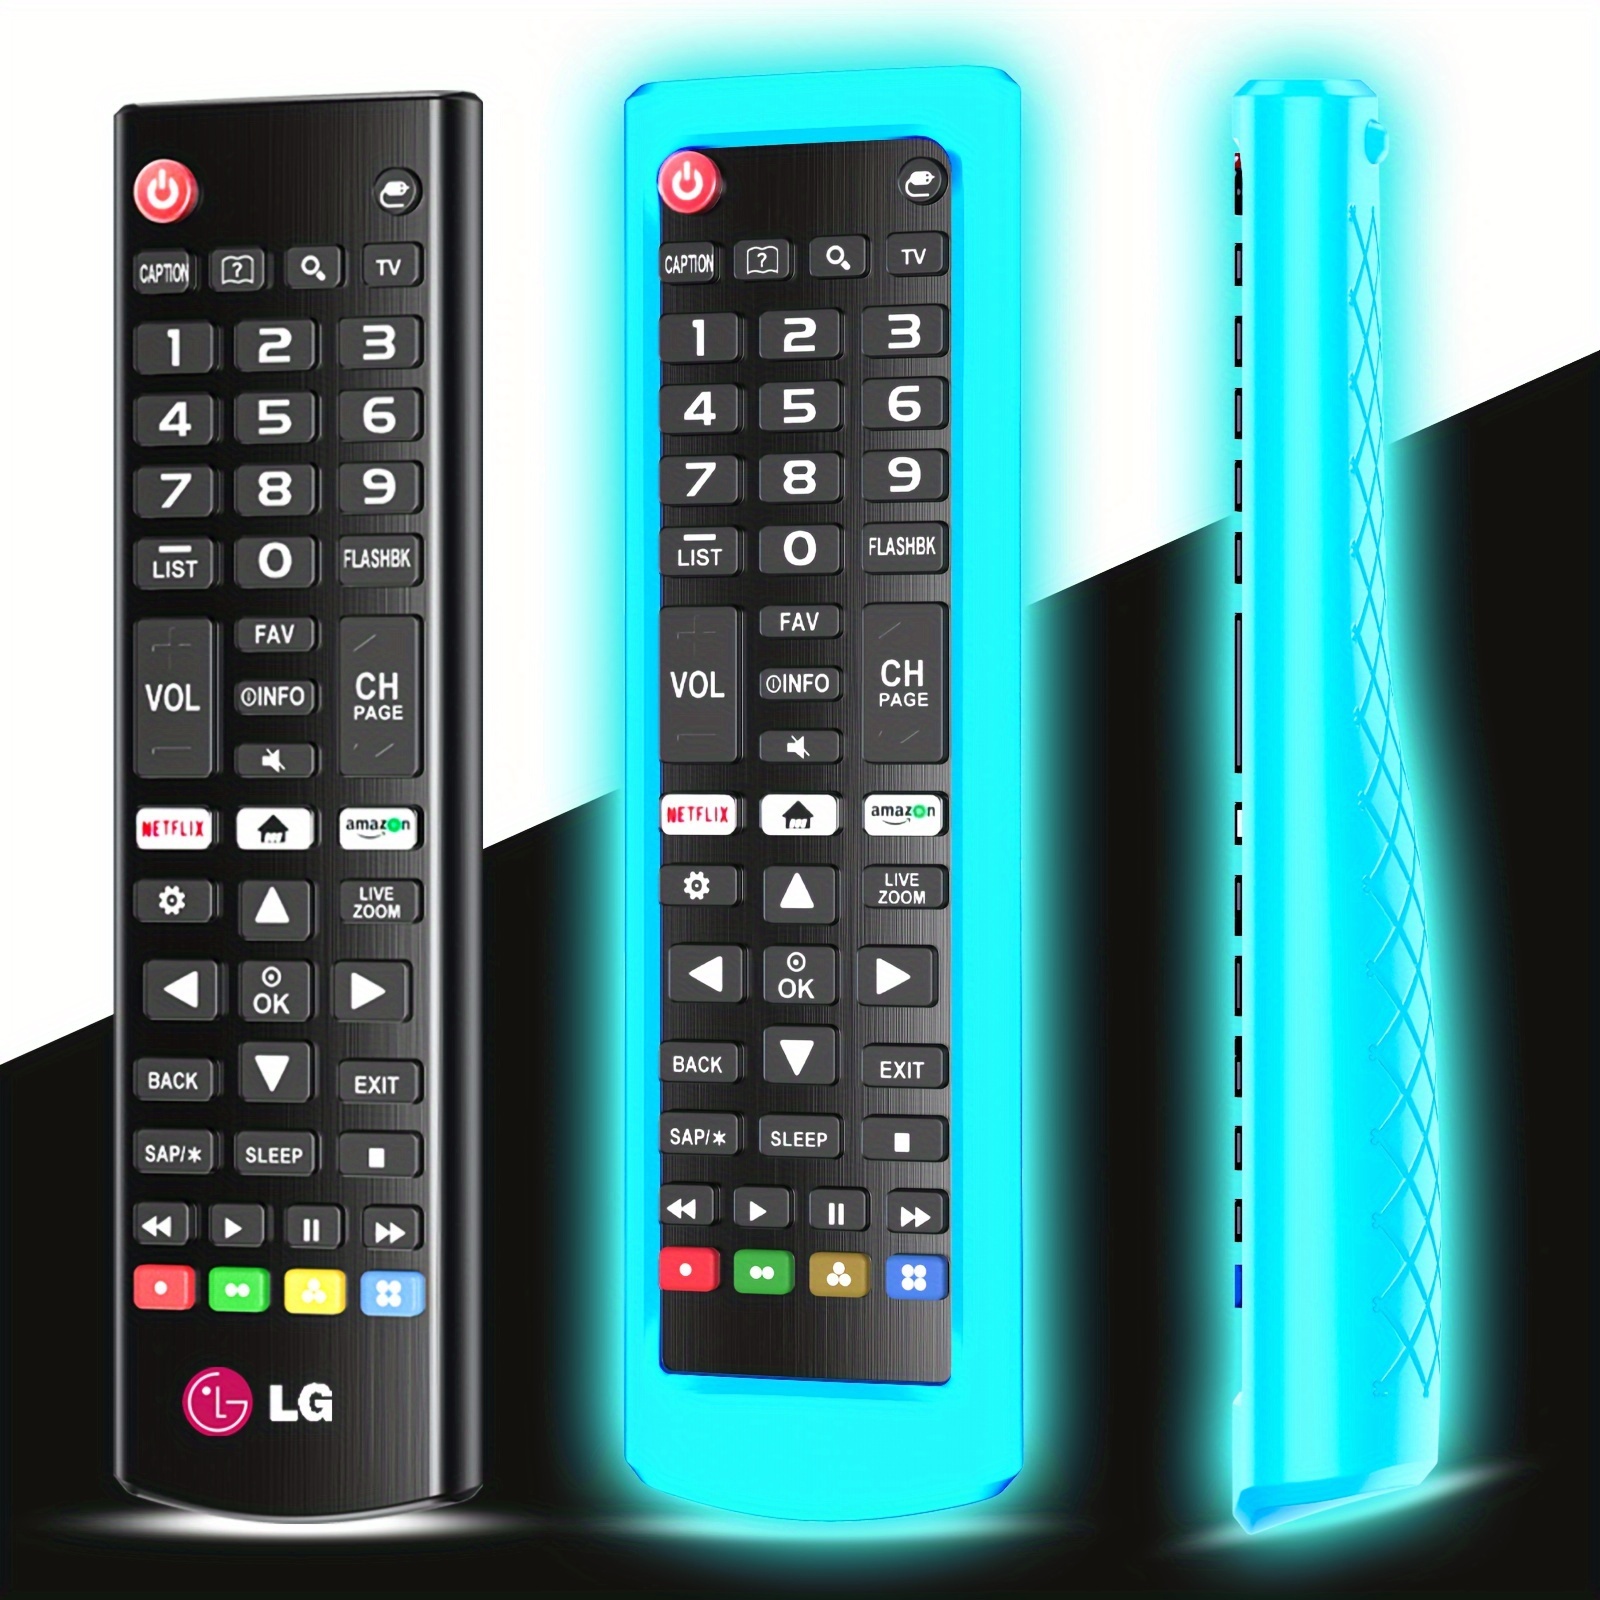  Par de mando a distancia universal para LG TV Remoto de  Repuesto Compatible con todos los modelos LCD LED 3D HDTV LG Smart TV  Control Remoto, viene con soporte remoto, funda